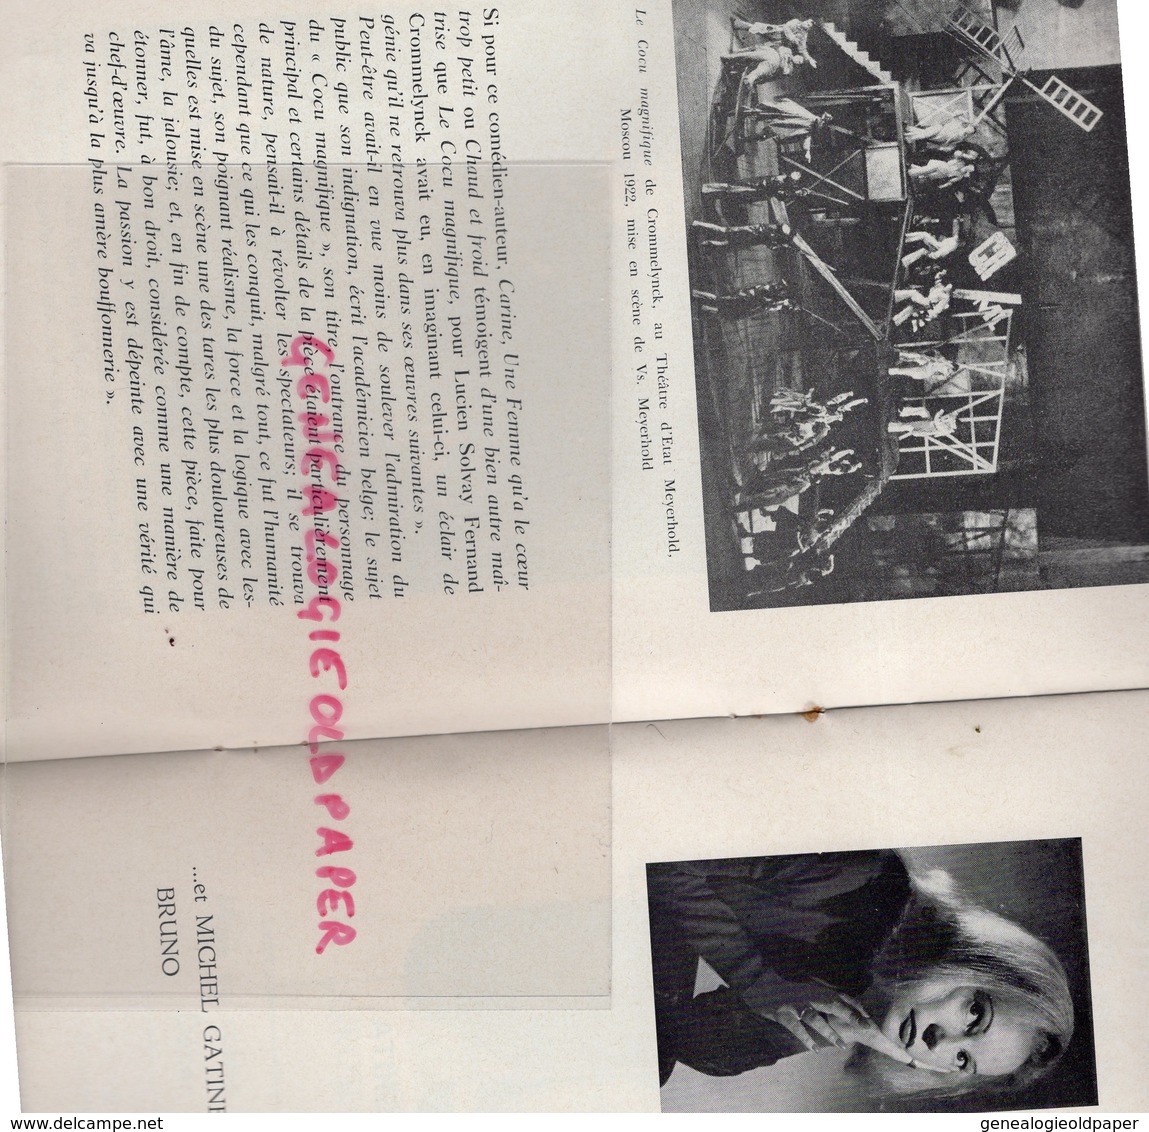 BELGIQUE-BRUXELLES- RARE PROGRAMME THEATRE MOLIERE-LE COCU MAGNIFIQUE FERNAND CROMMELYNCK-1965/66-NELLY BEGUIN-GATINEAU